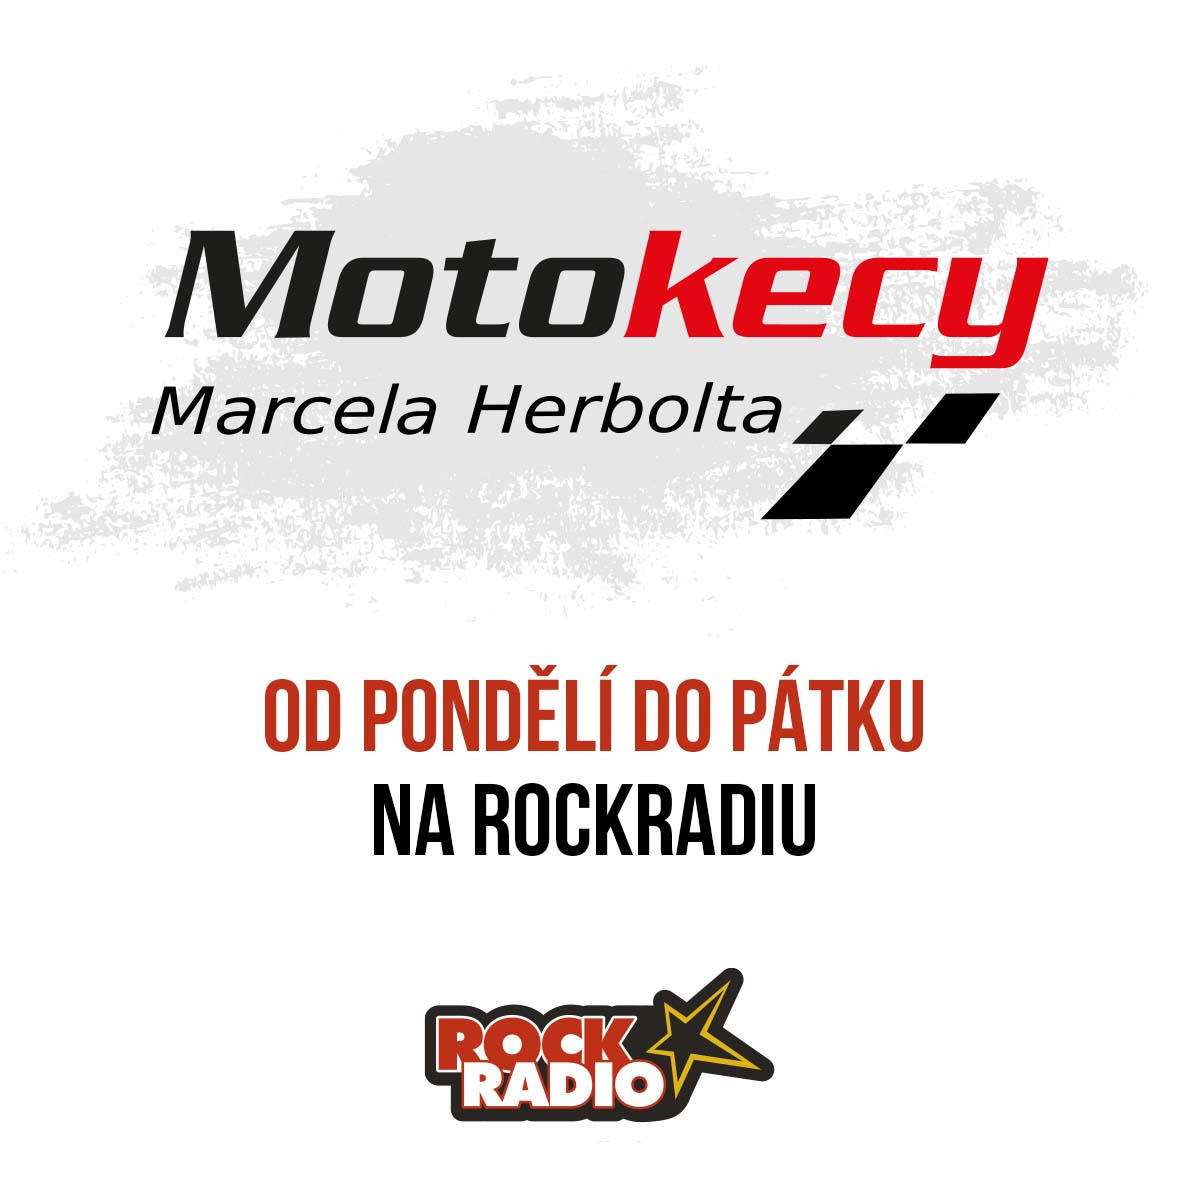 Motokecy Marcela Herbolta na středu 20. září